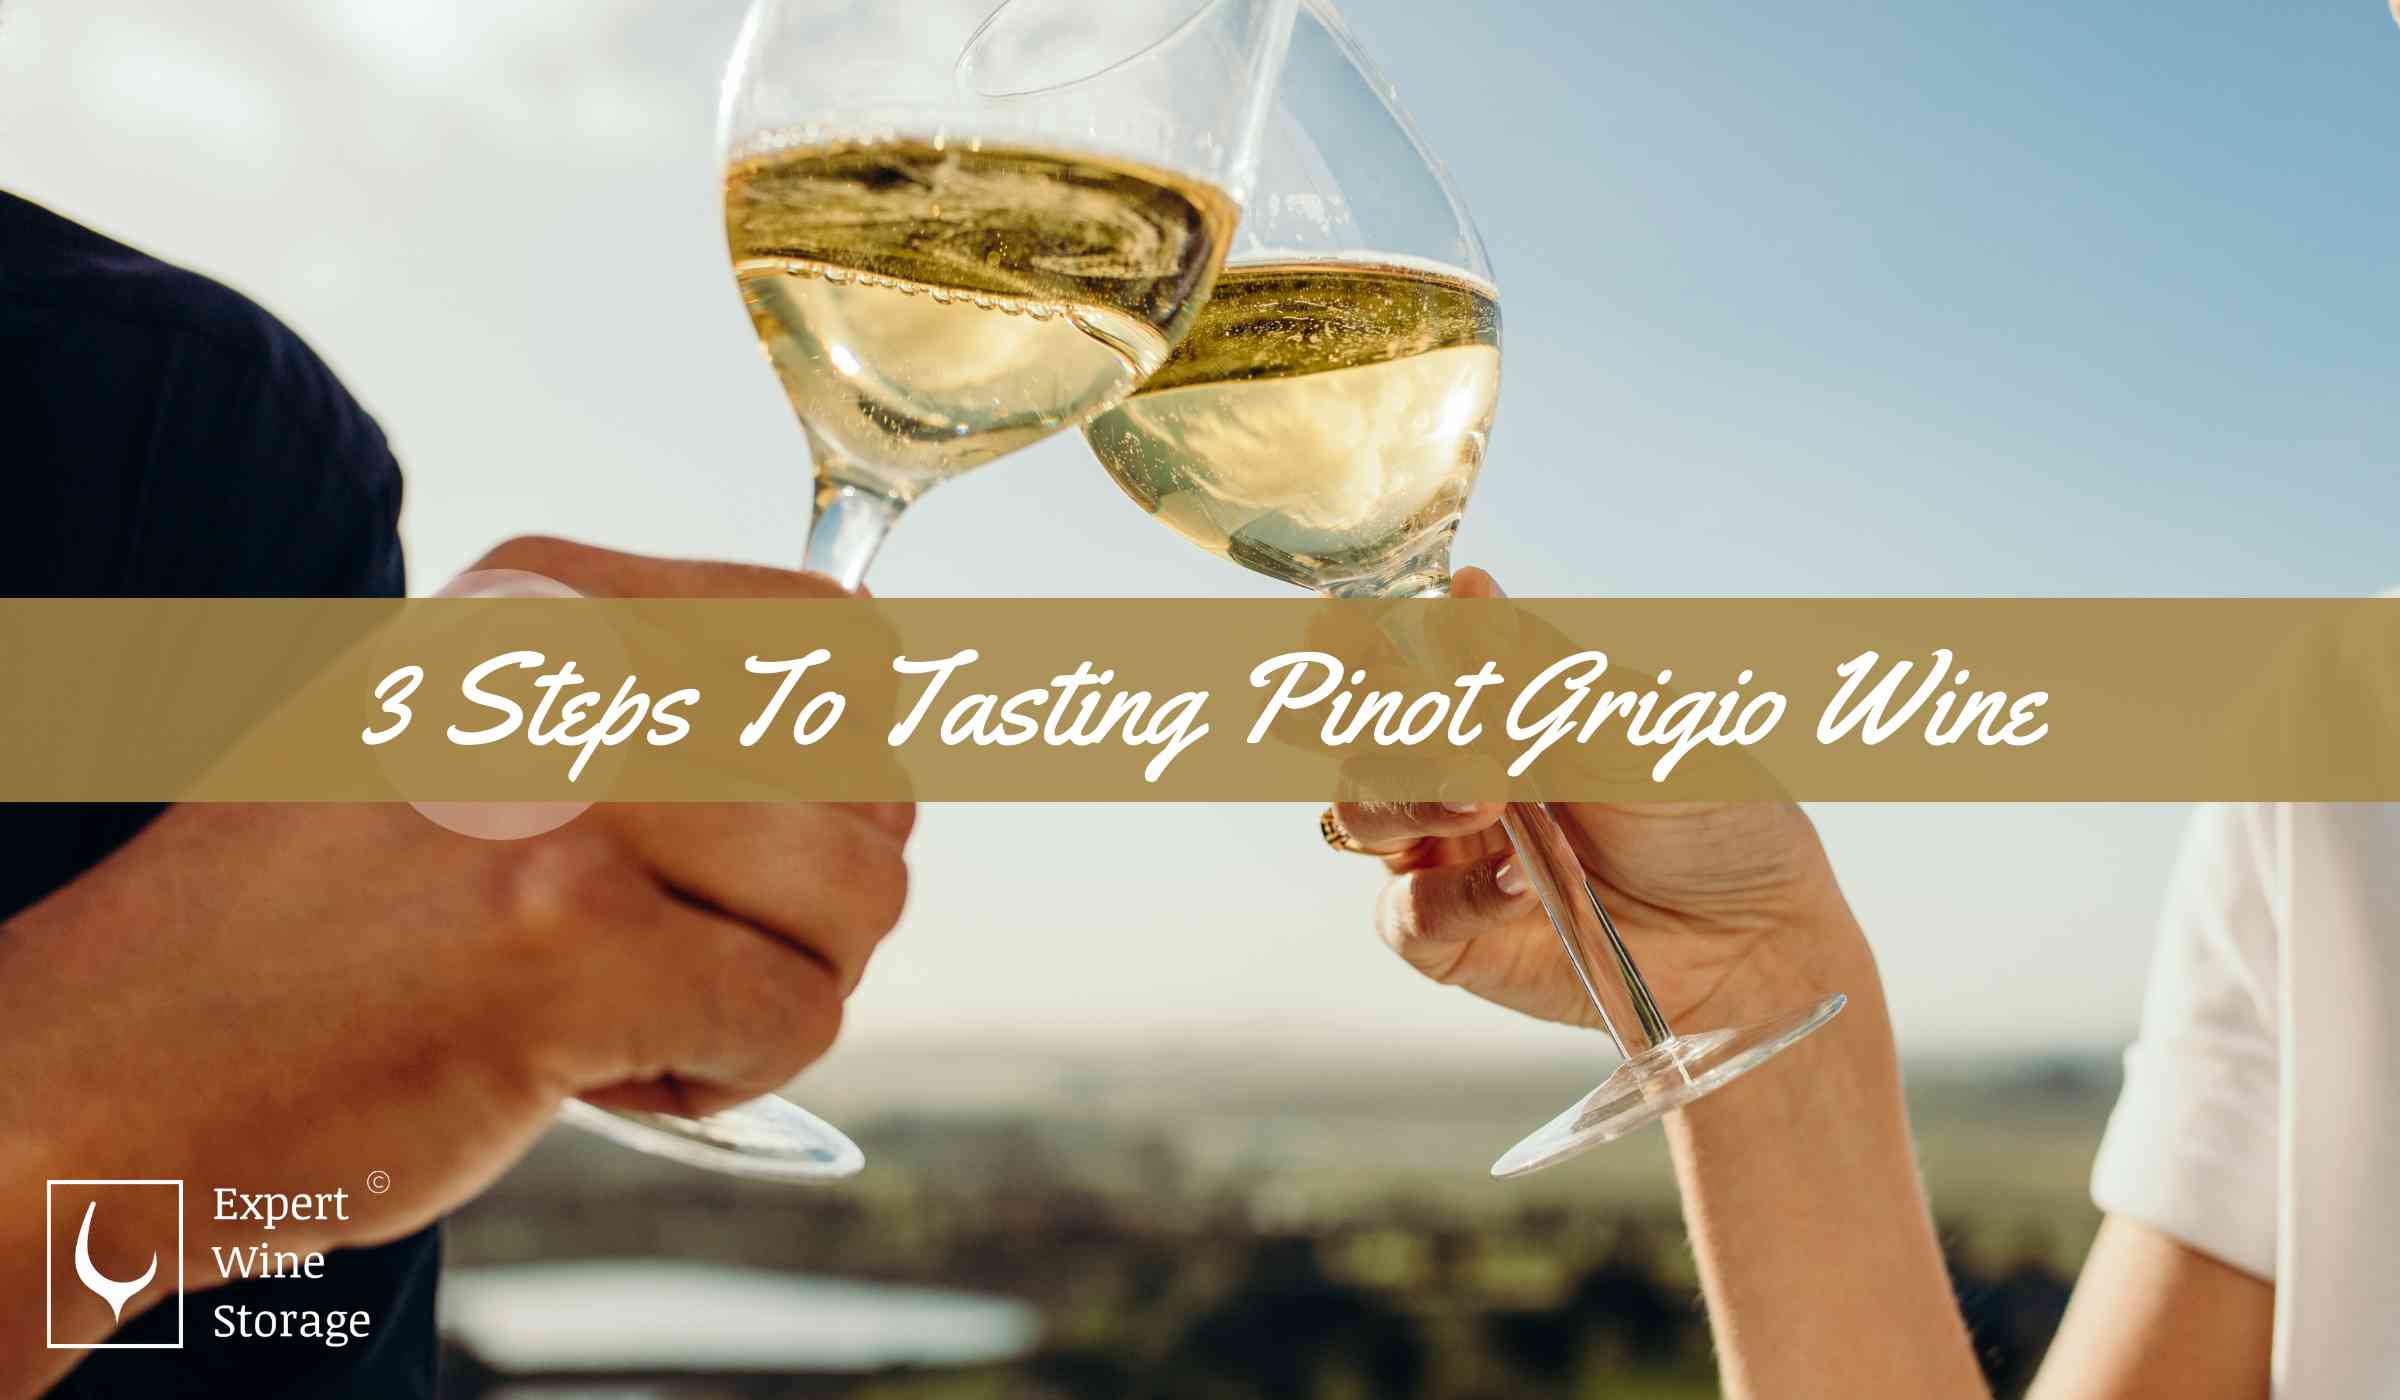 Ways to Taste Pinot Grigio